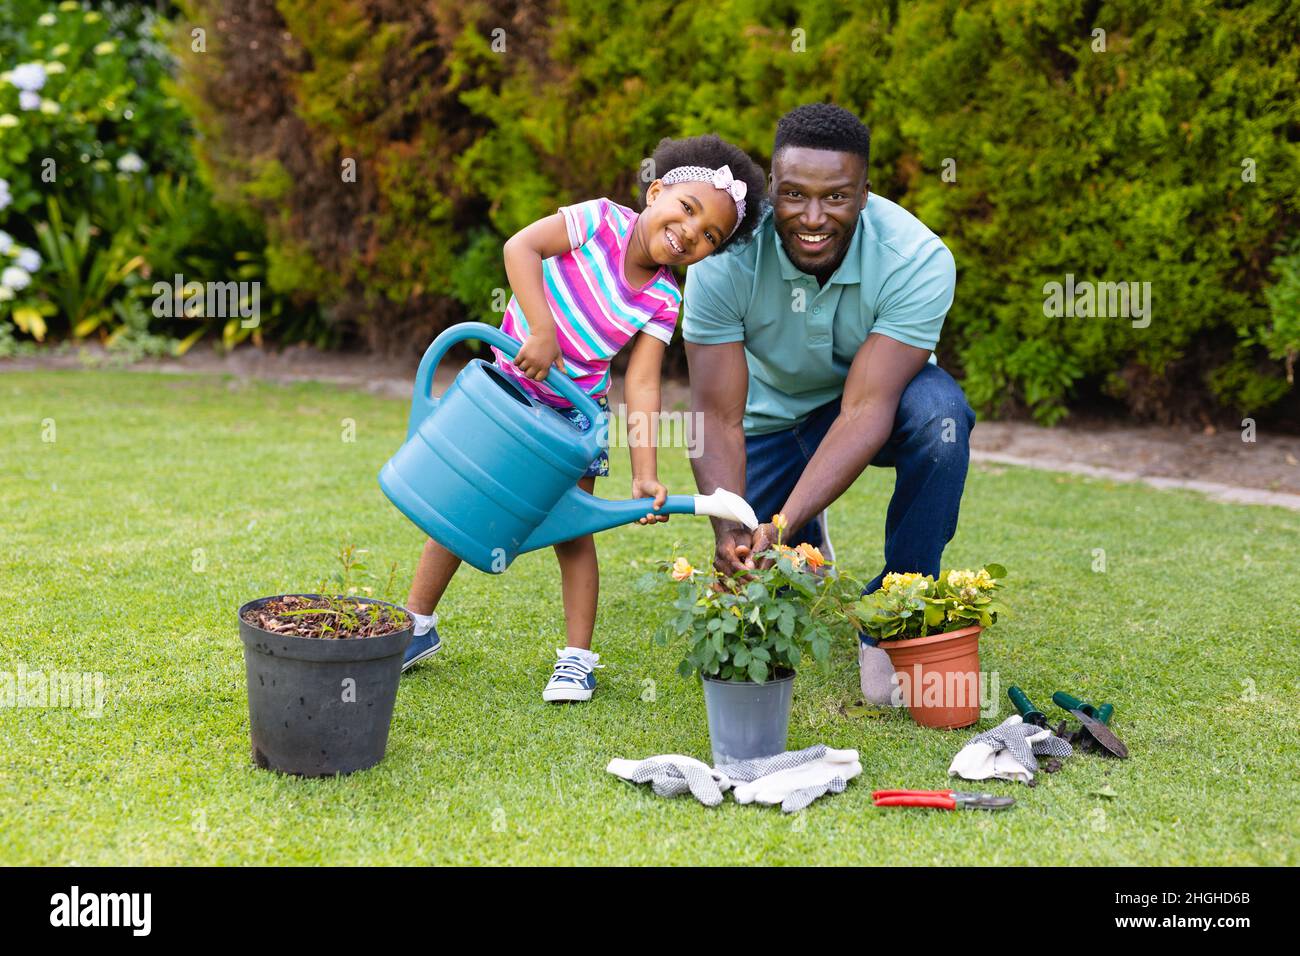 Porträt eines lächelnden afroamerikanischen Mädchens, das Pflanzen vom Vater gießt, der im Garten kniet Stockfoto